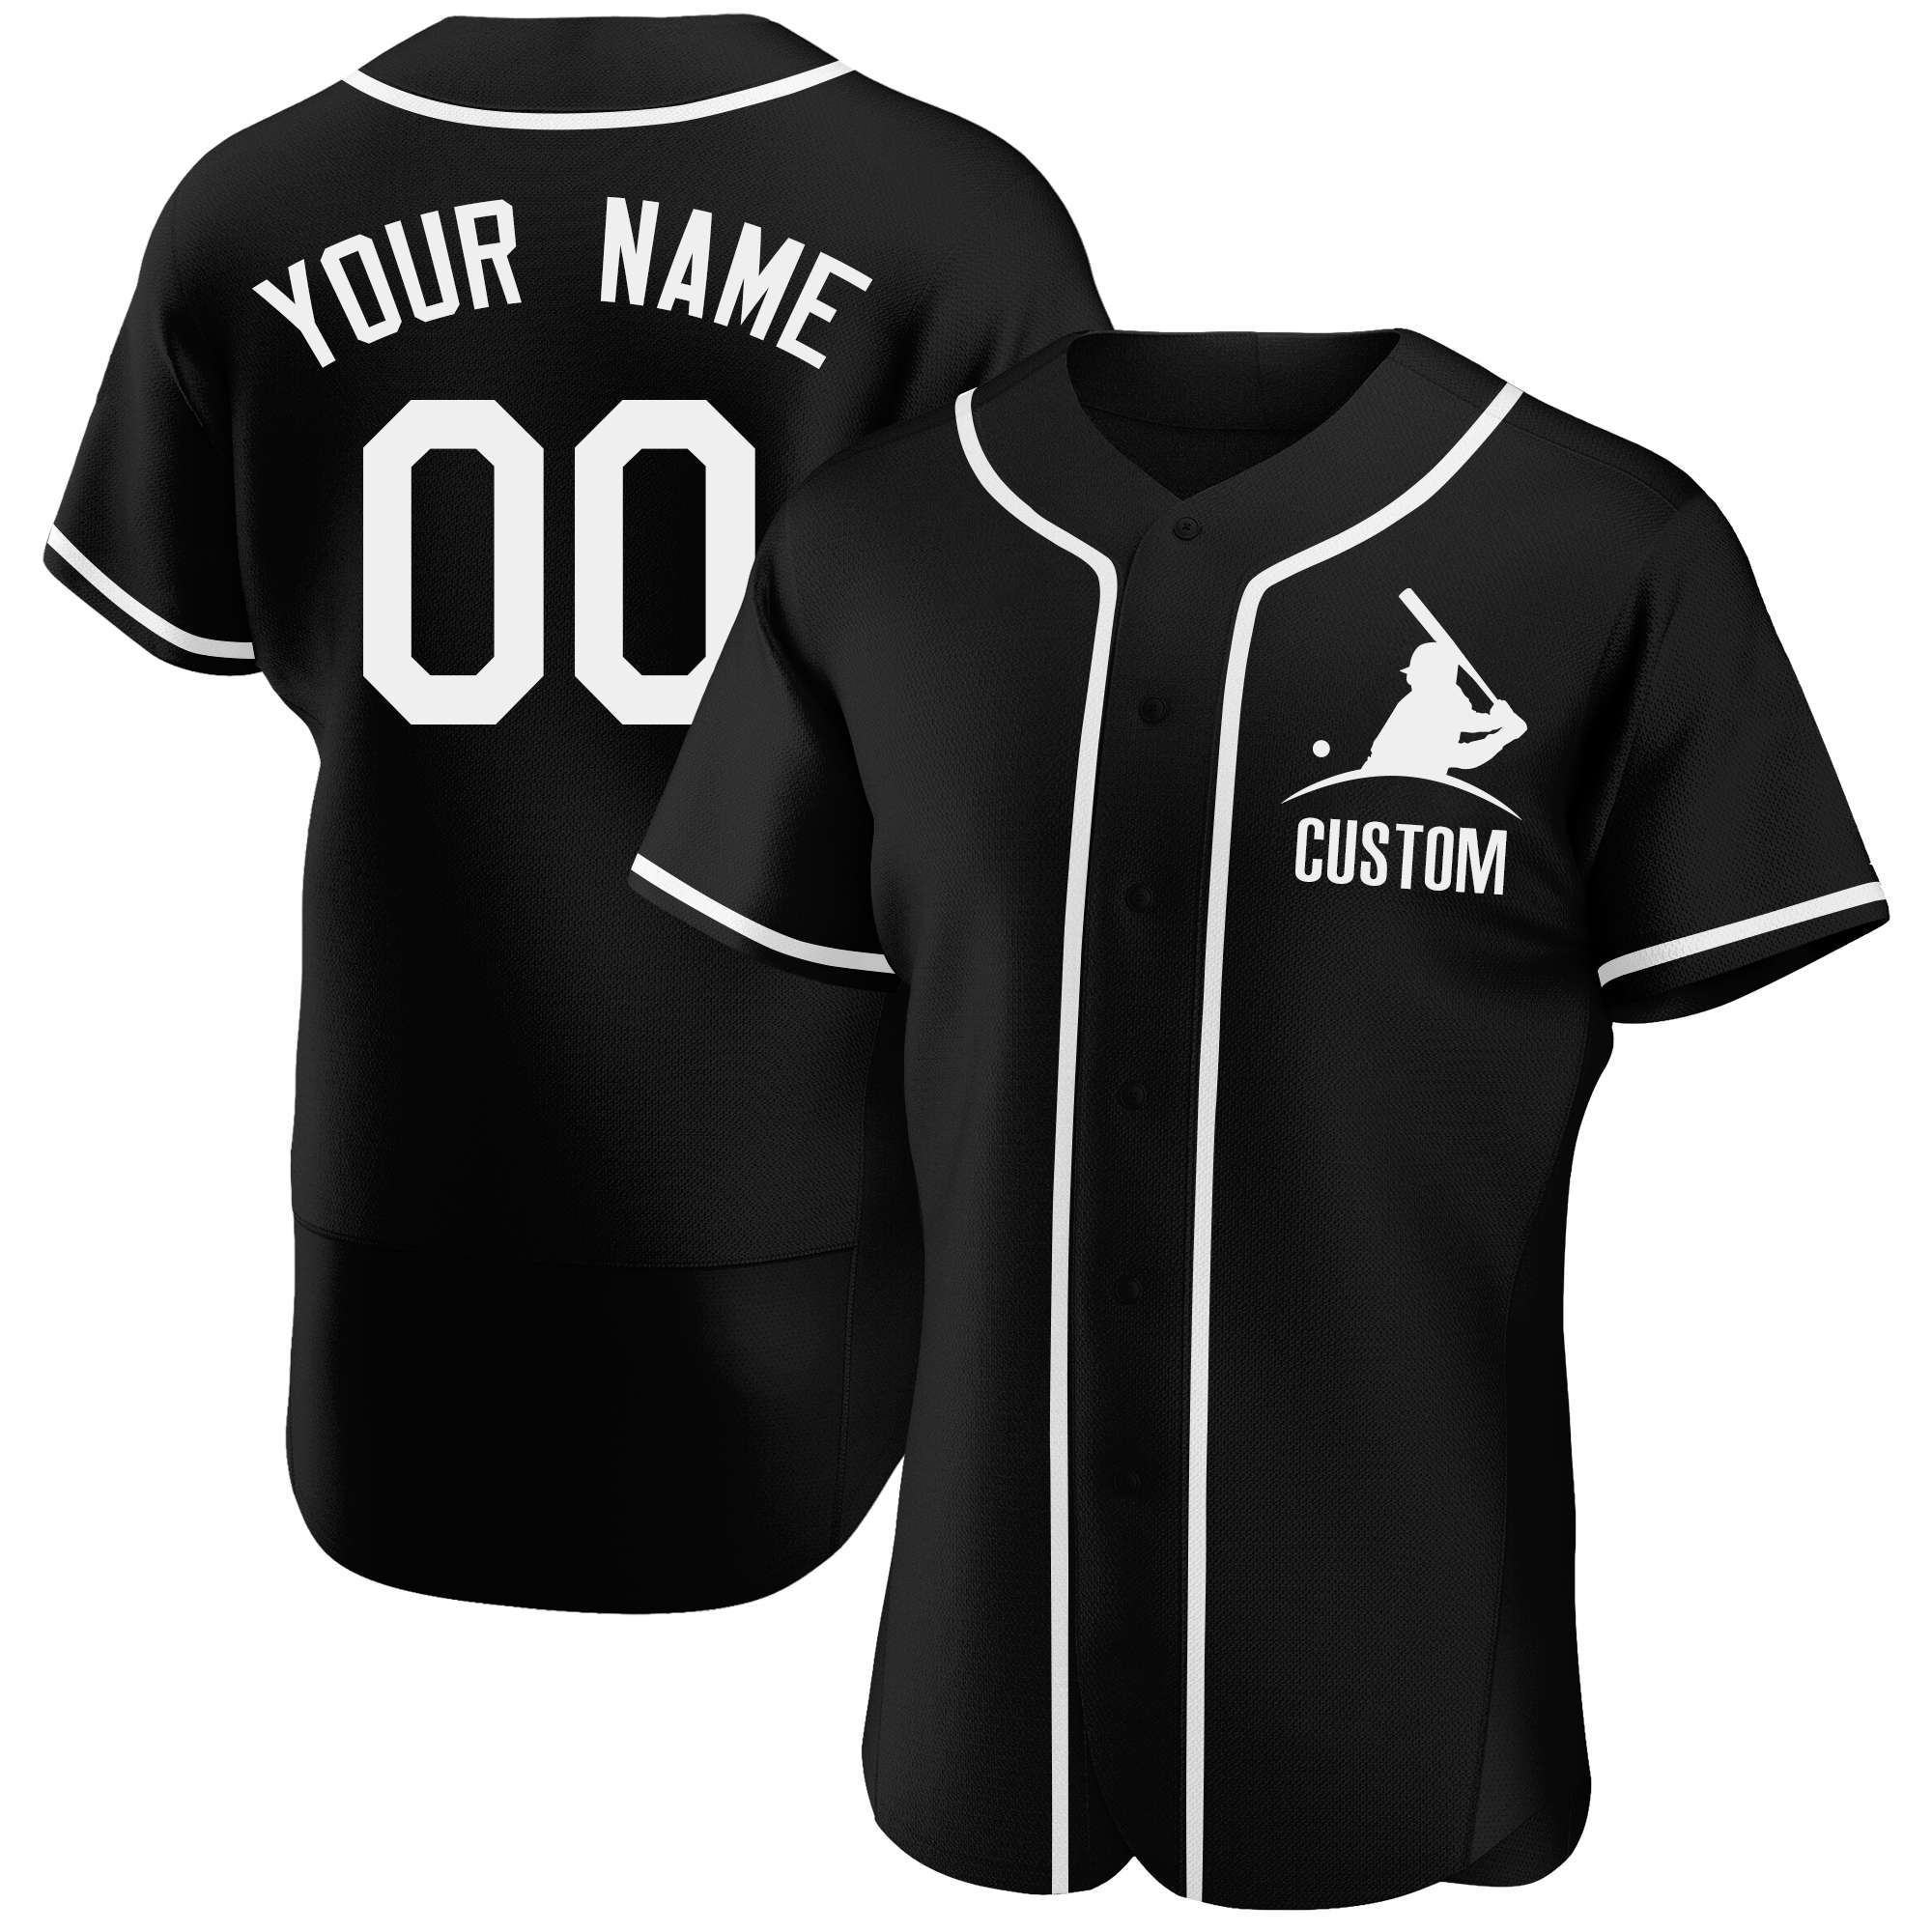 Custom Novel Baseball Jerseys Full Sublimation Design Name Number 100 Polyester Baseball Shirt Softball Uniforms Men 3